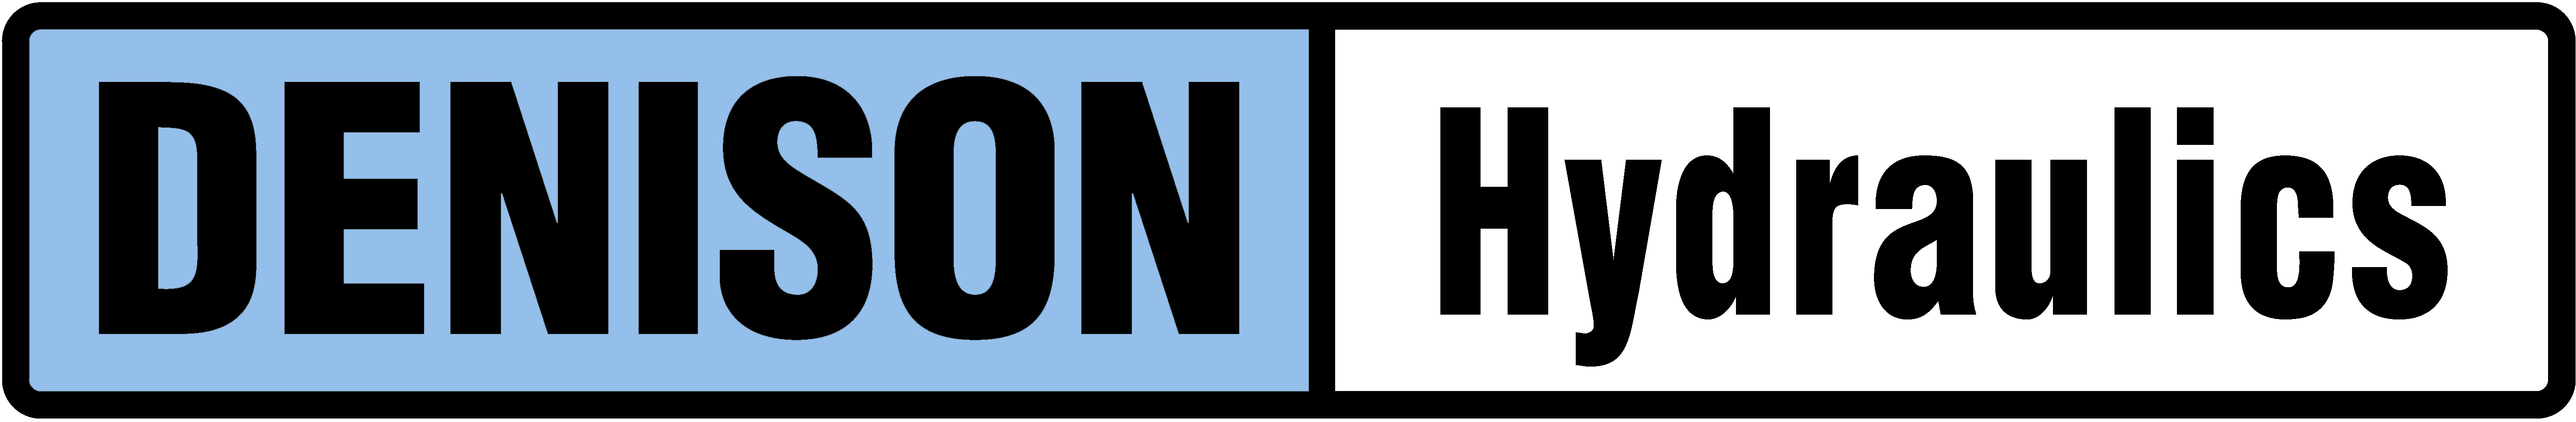 Denison Hydraulics logo